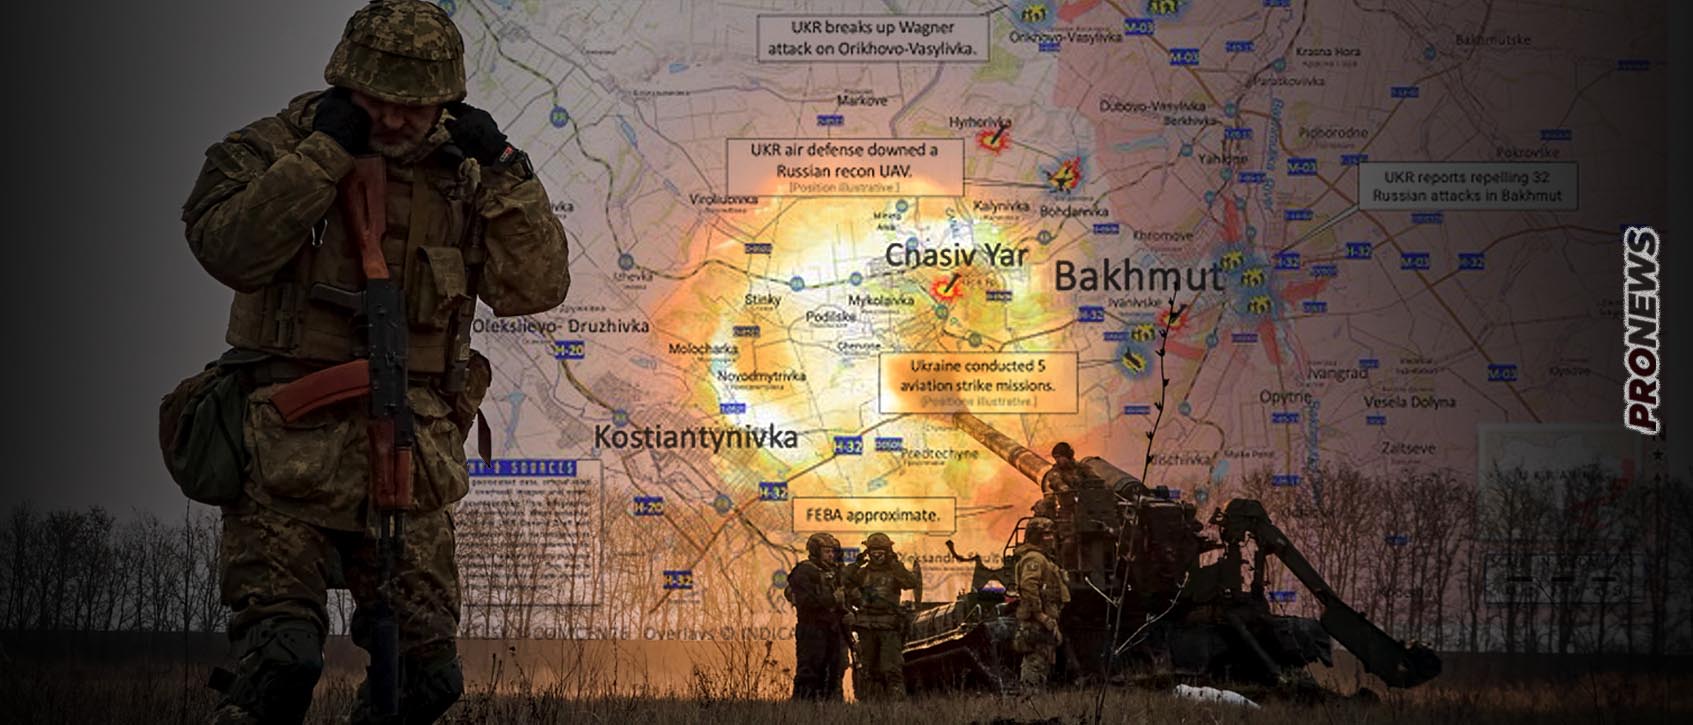 Οι Ρώσοι ξεκίνησαν την πολιορκία των οχυρών του Τσάσιβ Γιαρ και του Κρόμοβε – Ακολουθεί η Λίμαν και το Σλαβιάνσκ